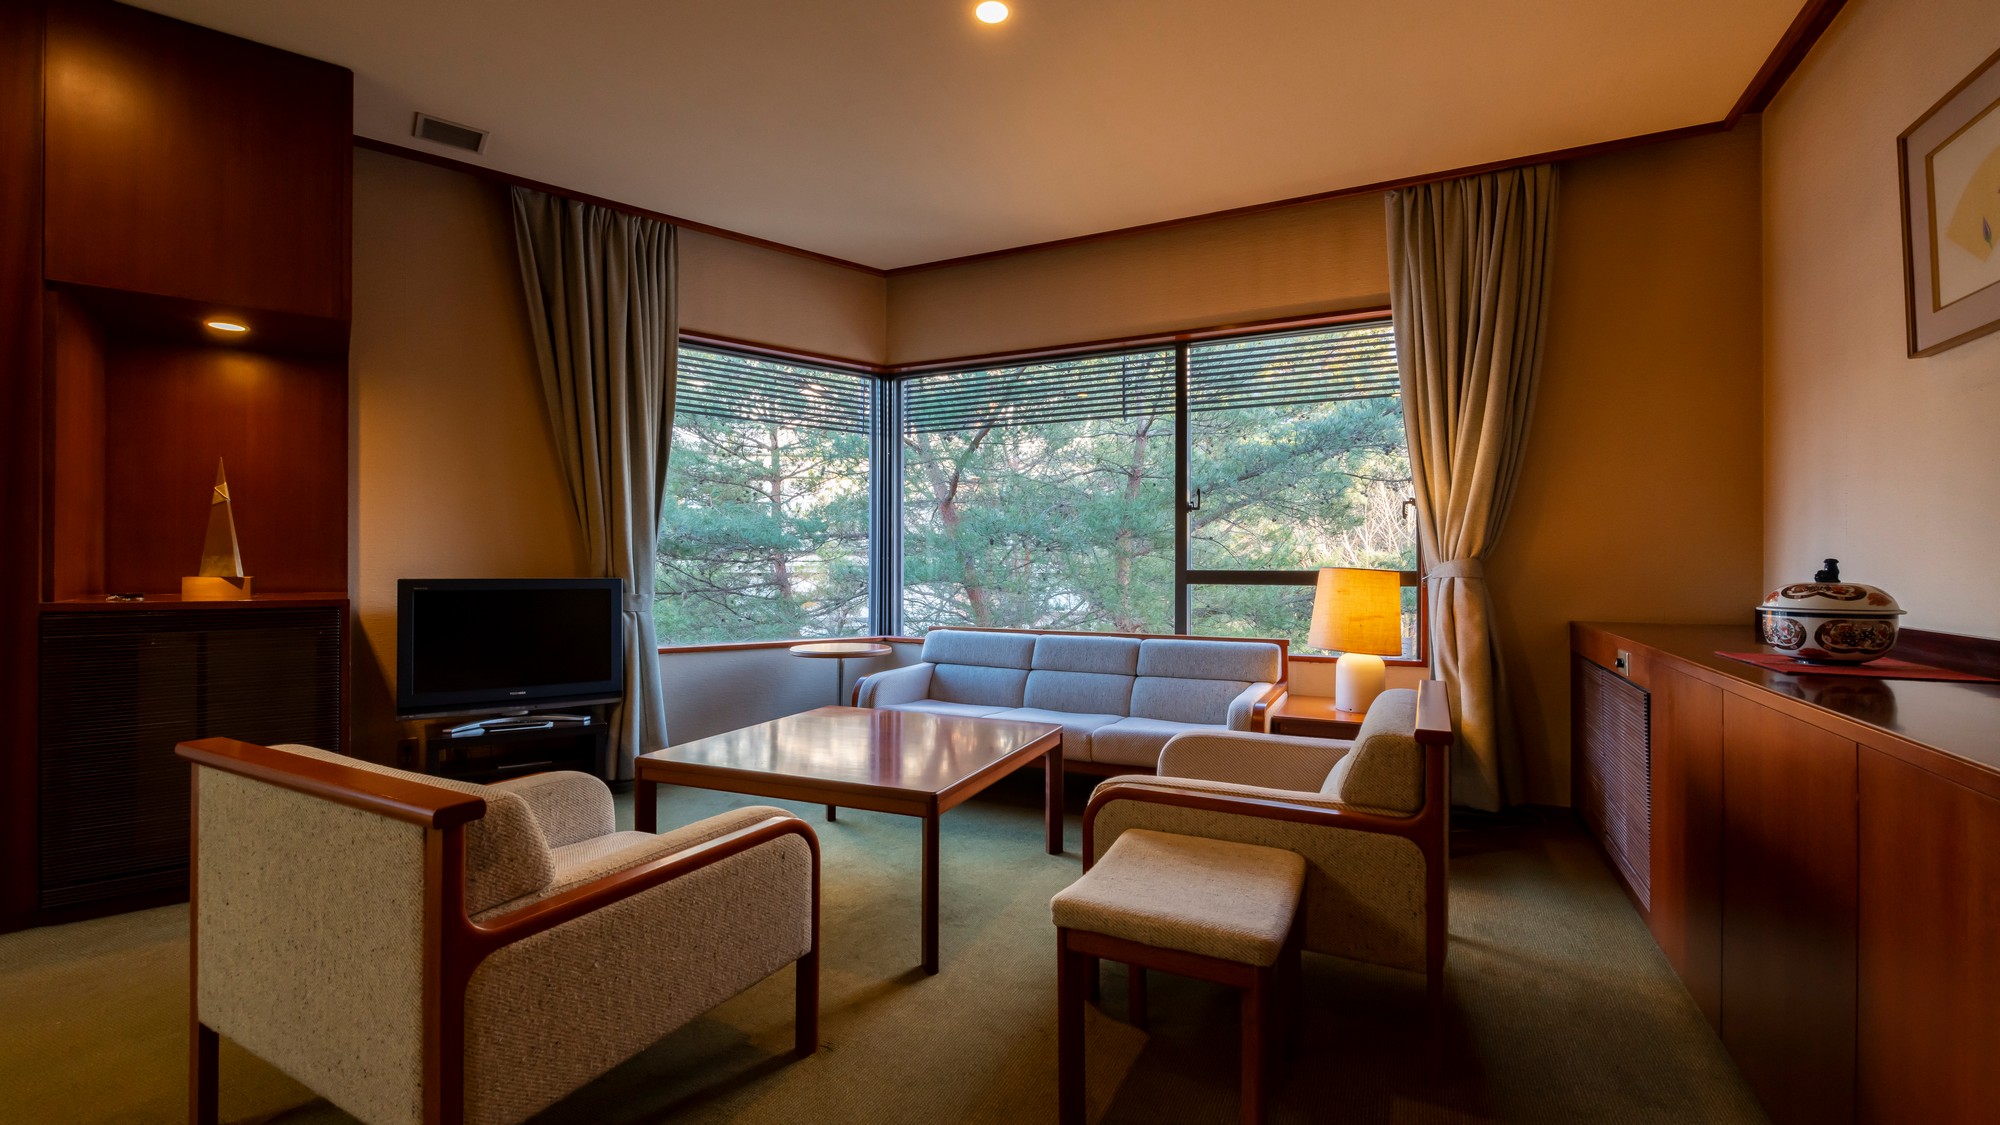 本丸特別室「桂」庭園を望み、美しい四季折々の景色と調和する客室。